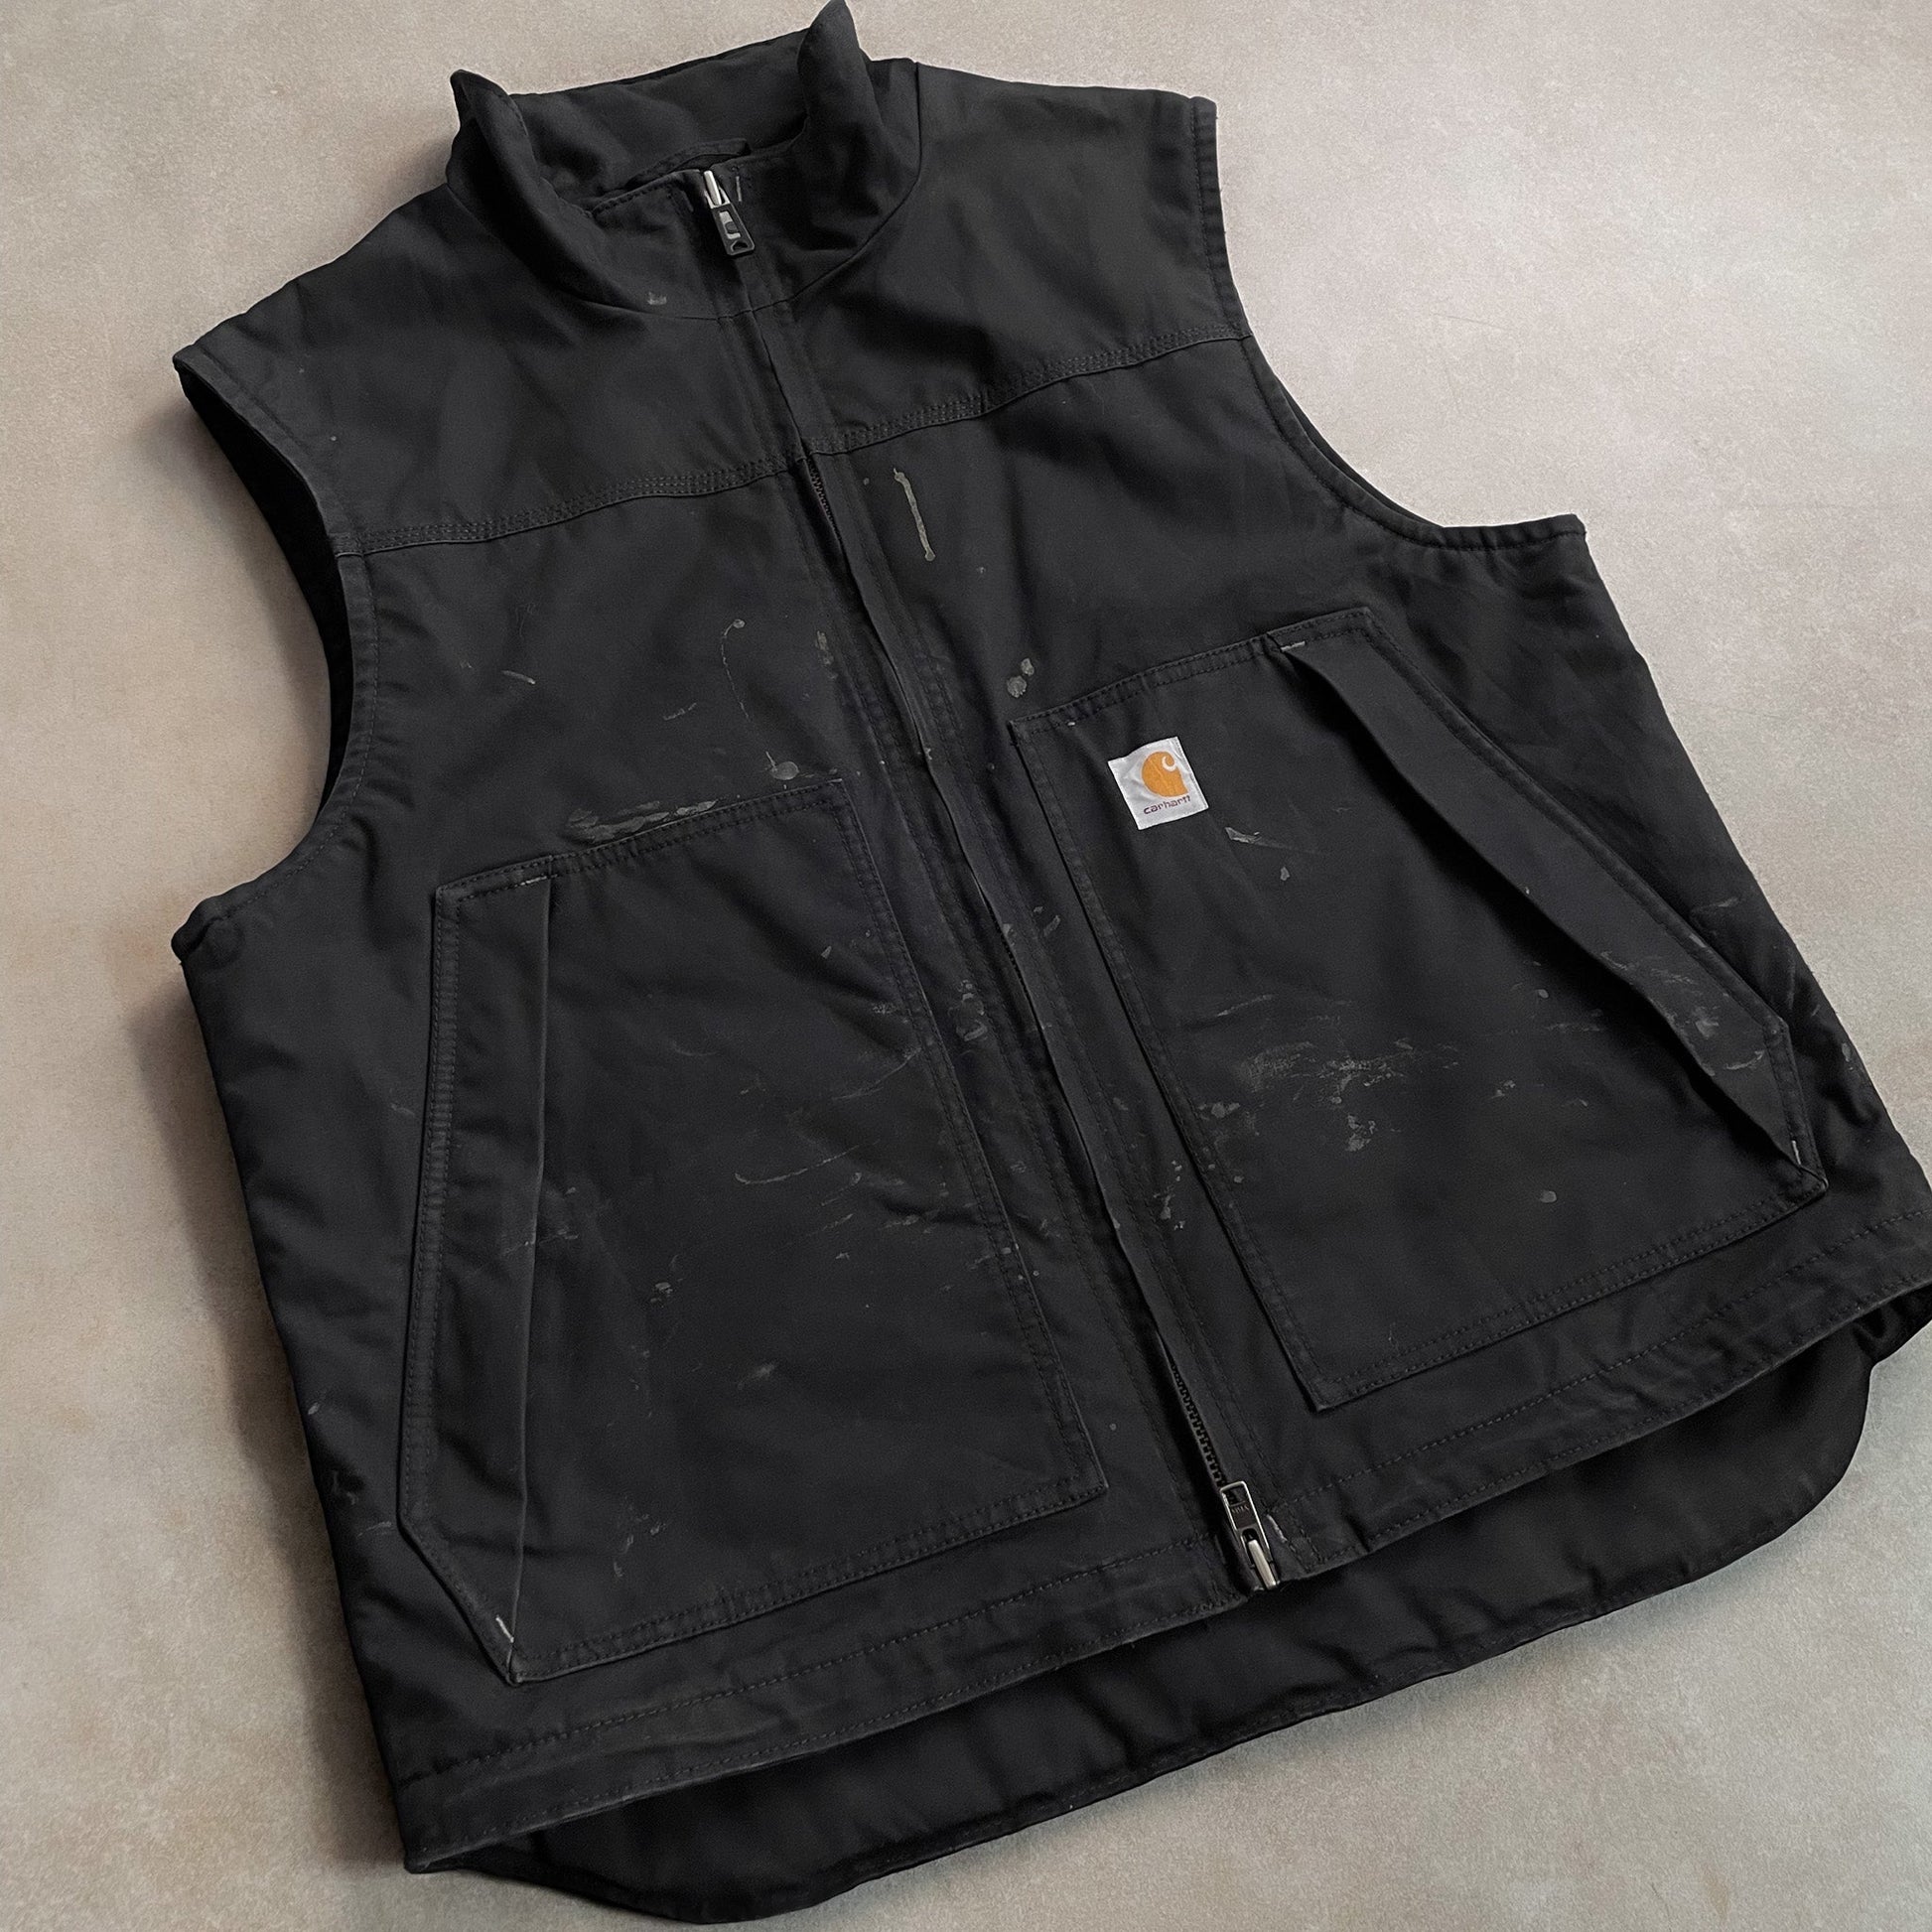 2000s Carhartt Quilted Gillet Black Vest - L sullivansvintage